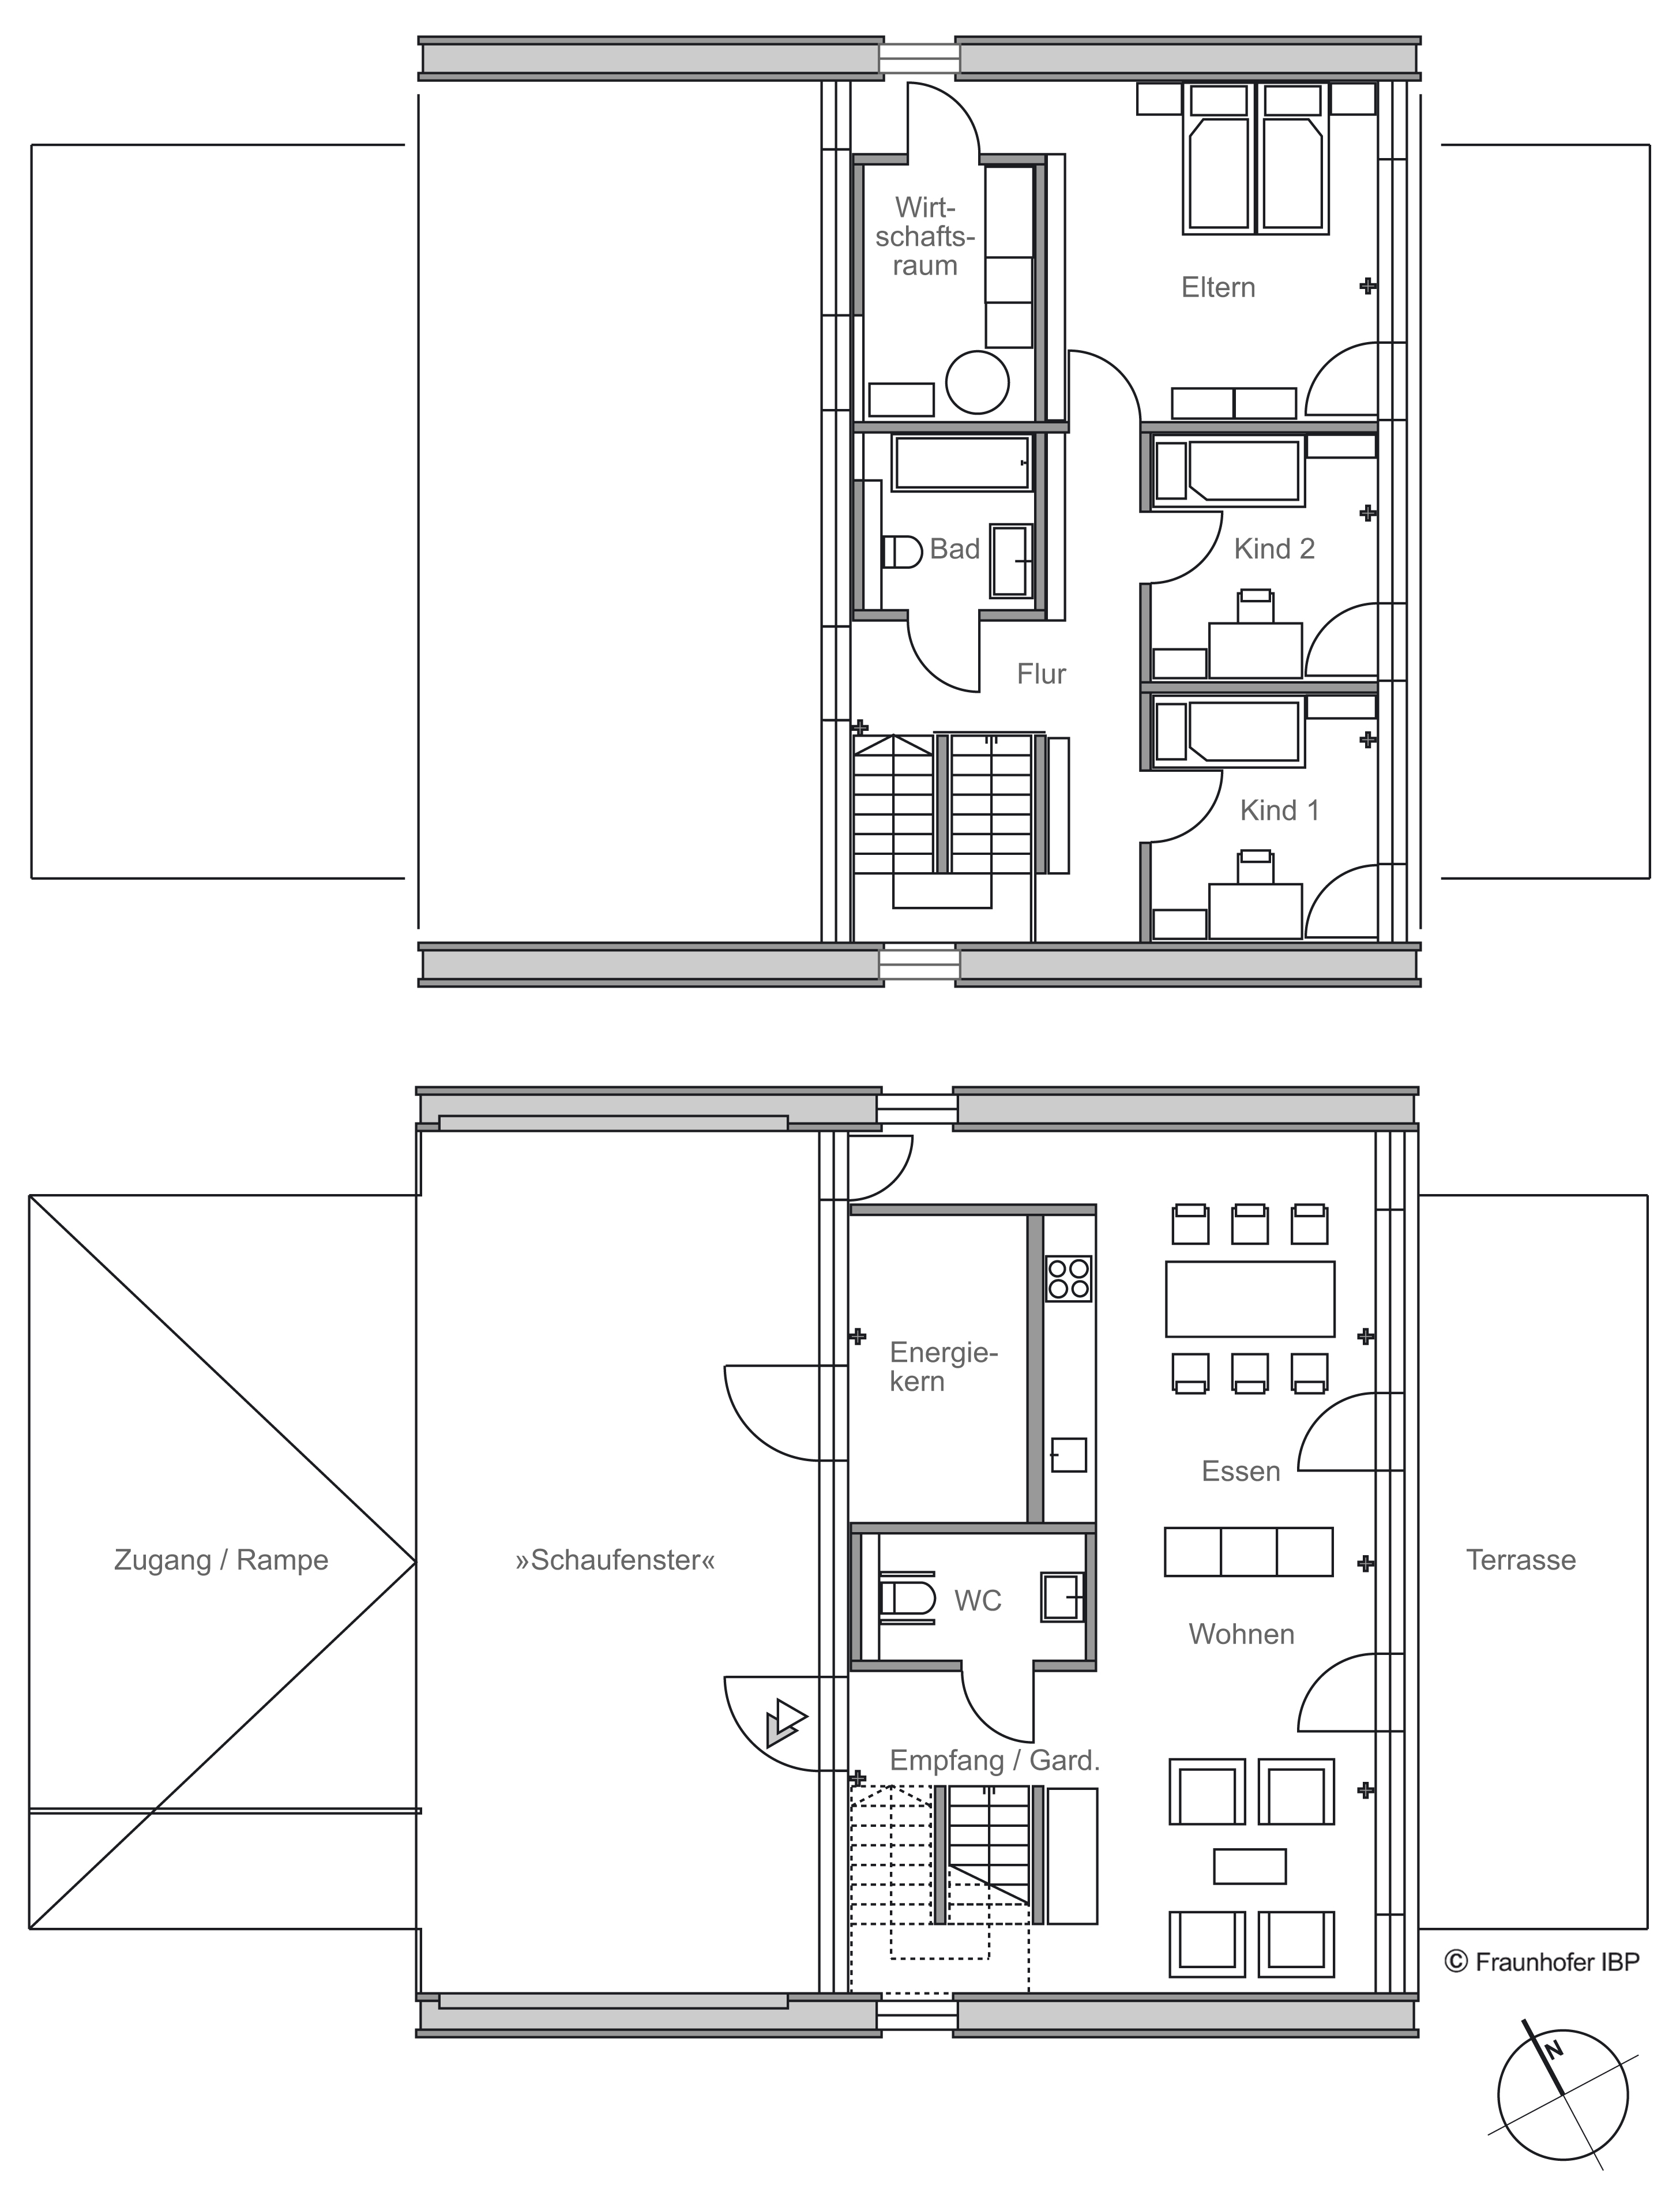 Efficiency House Plus Berlin - Floor plan